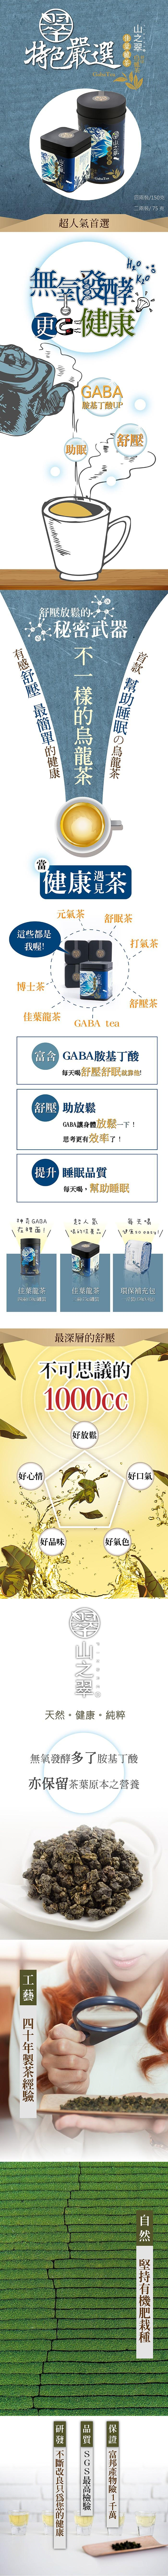 山之翠-舒眠GABA佳葉龍茶-環保包裝(150克X2入)﻿產品資訊